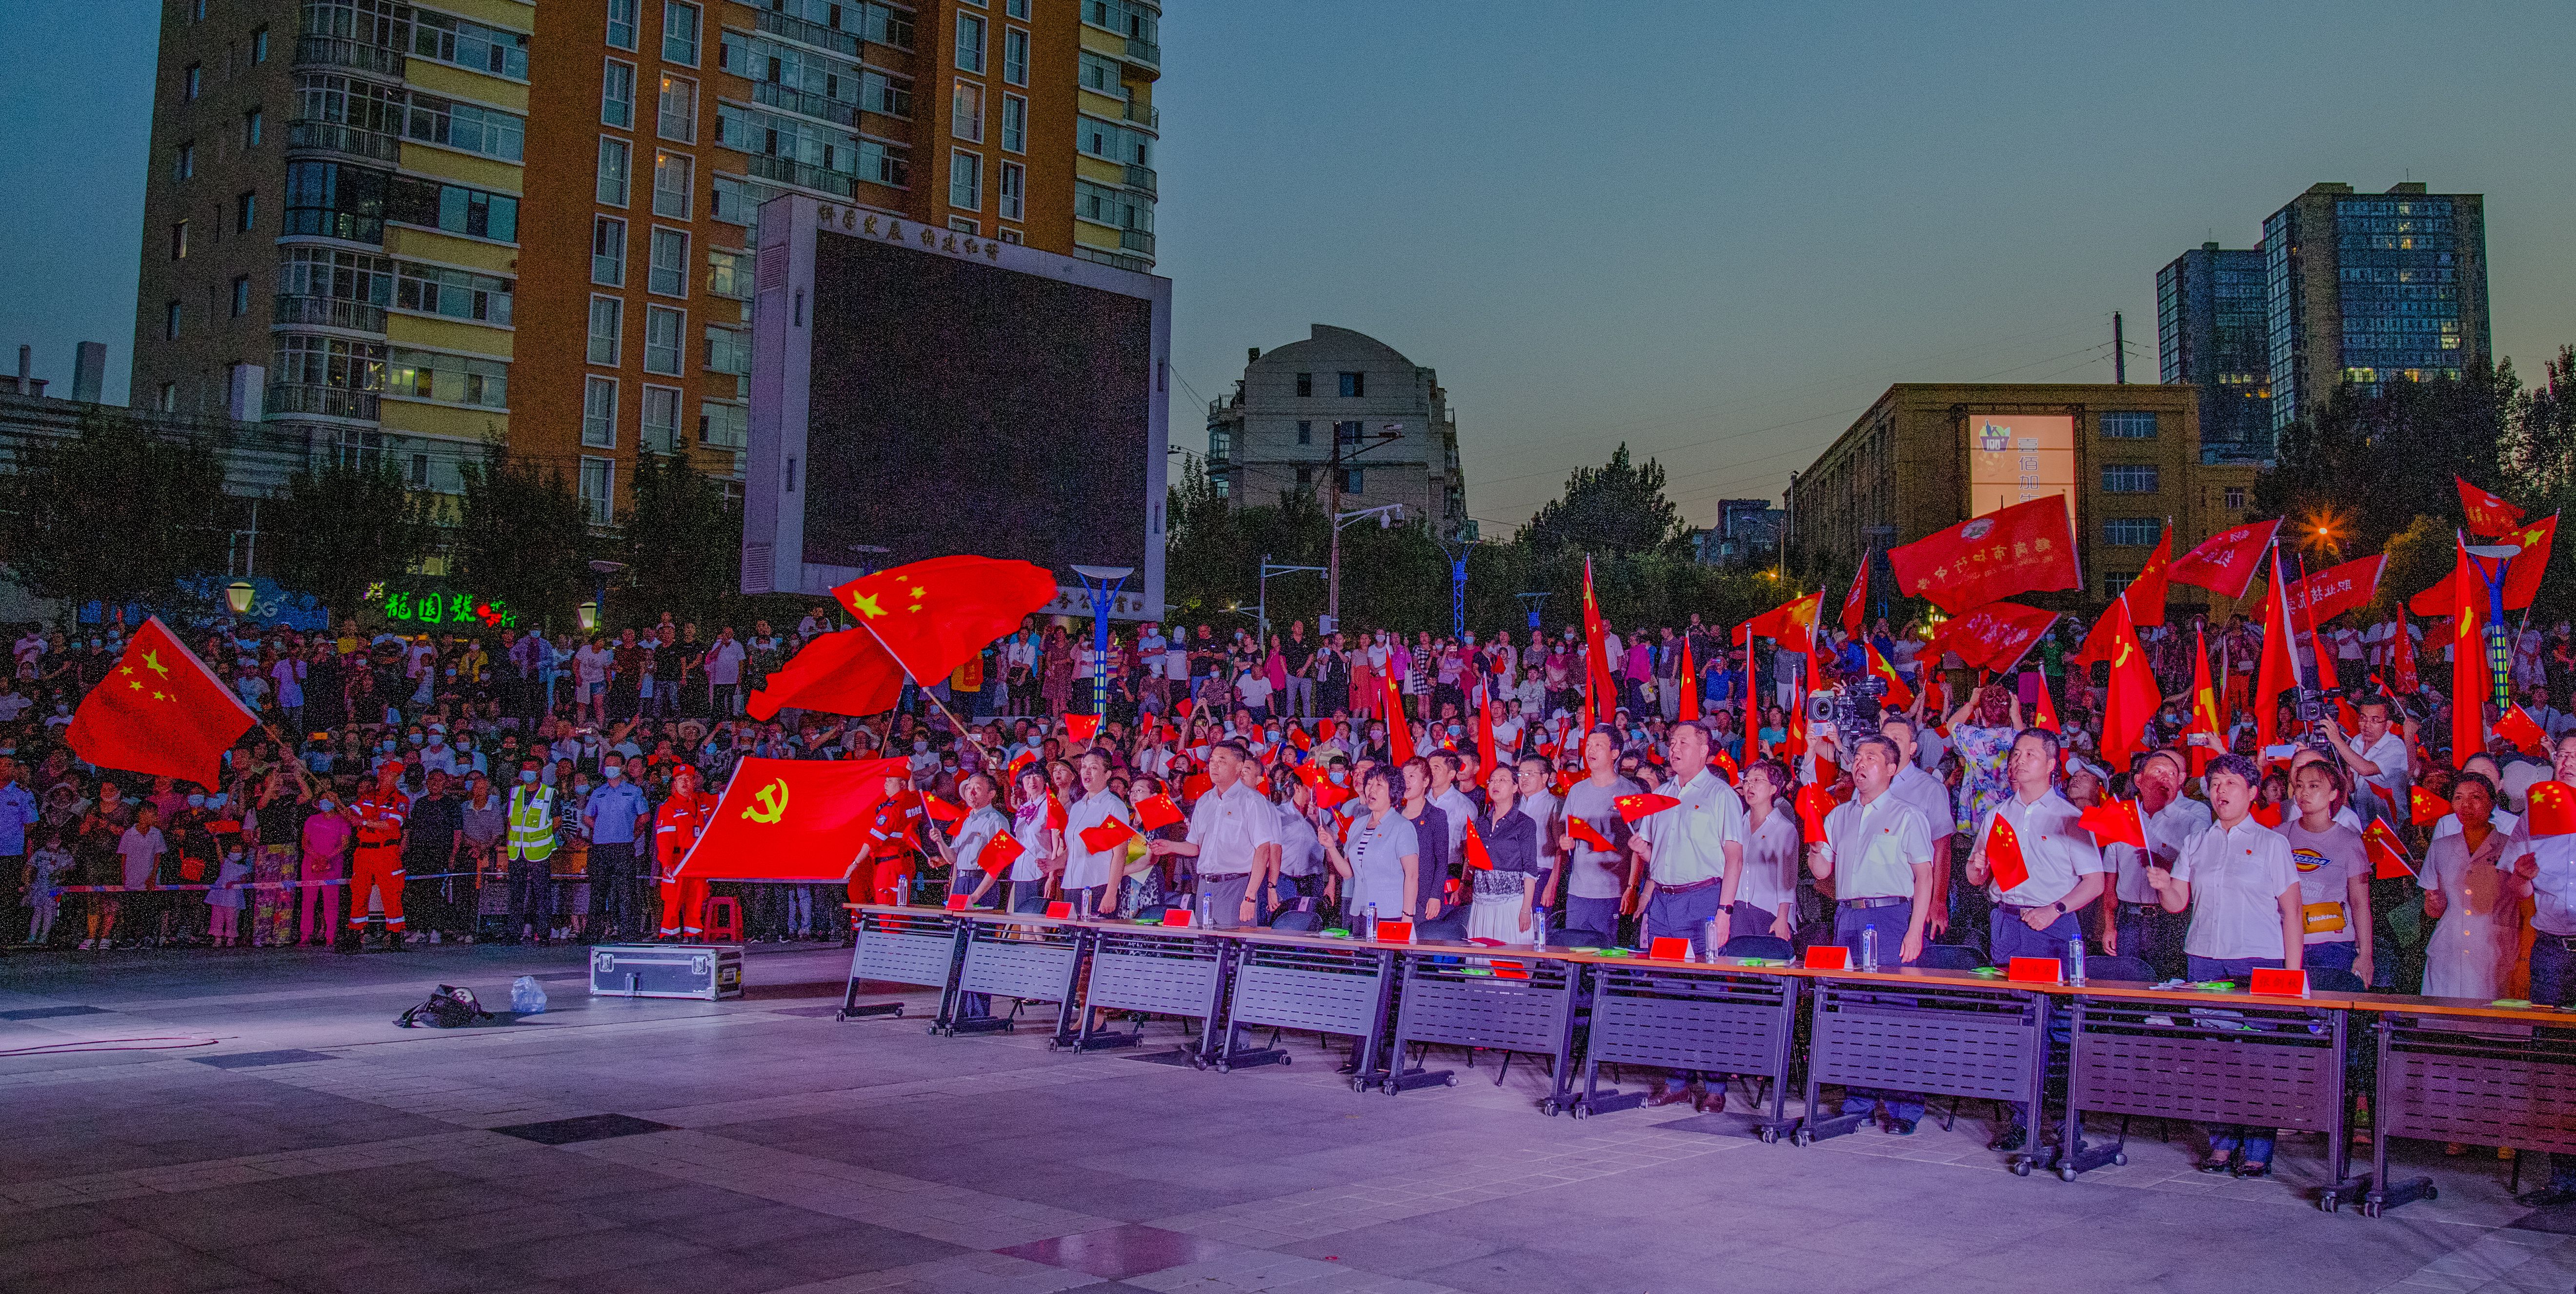 鹤岗市“庆百年华诞·颂百年辉煌”庆祝 中国共产党成立100周年群众歌会掀起热潮